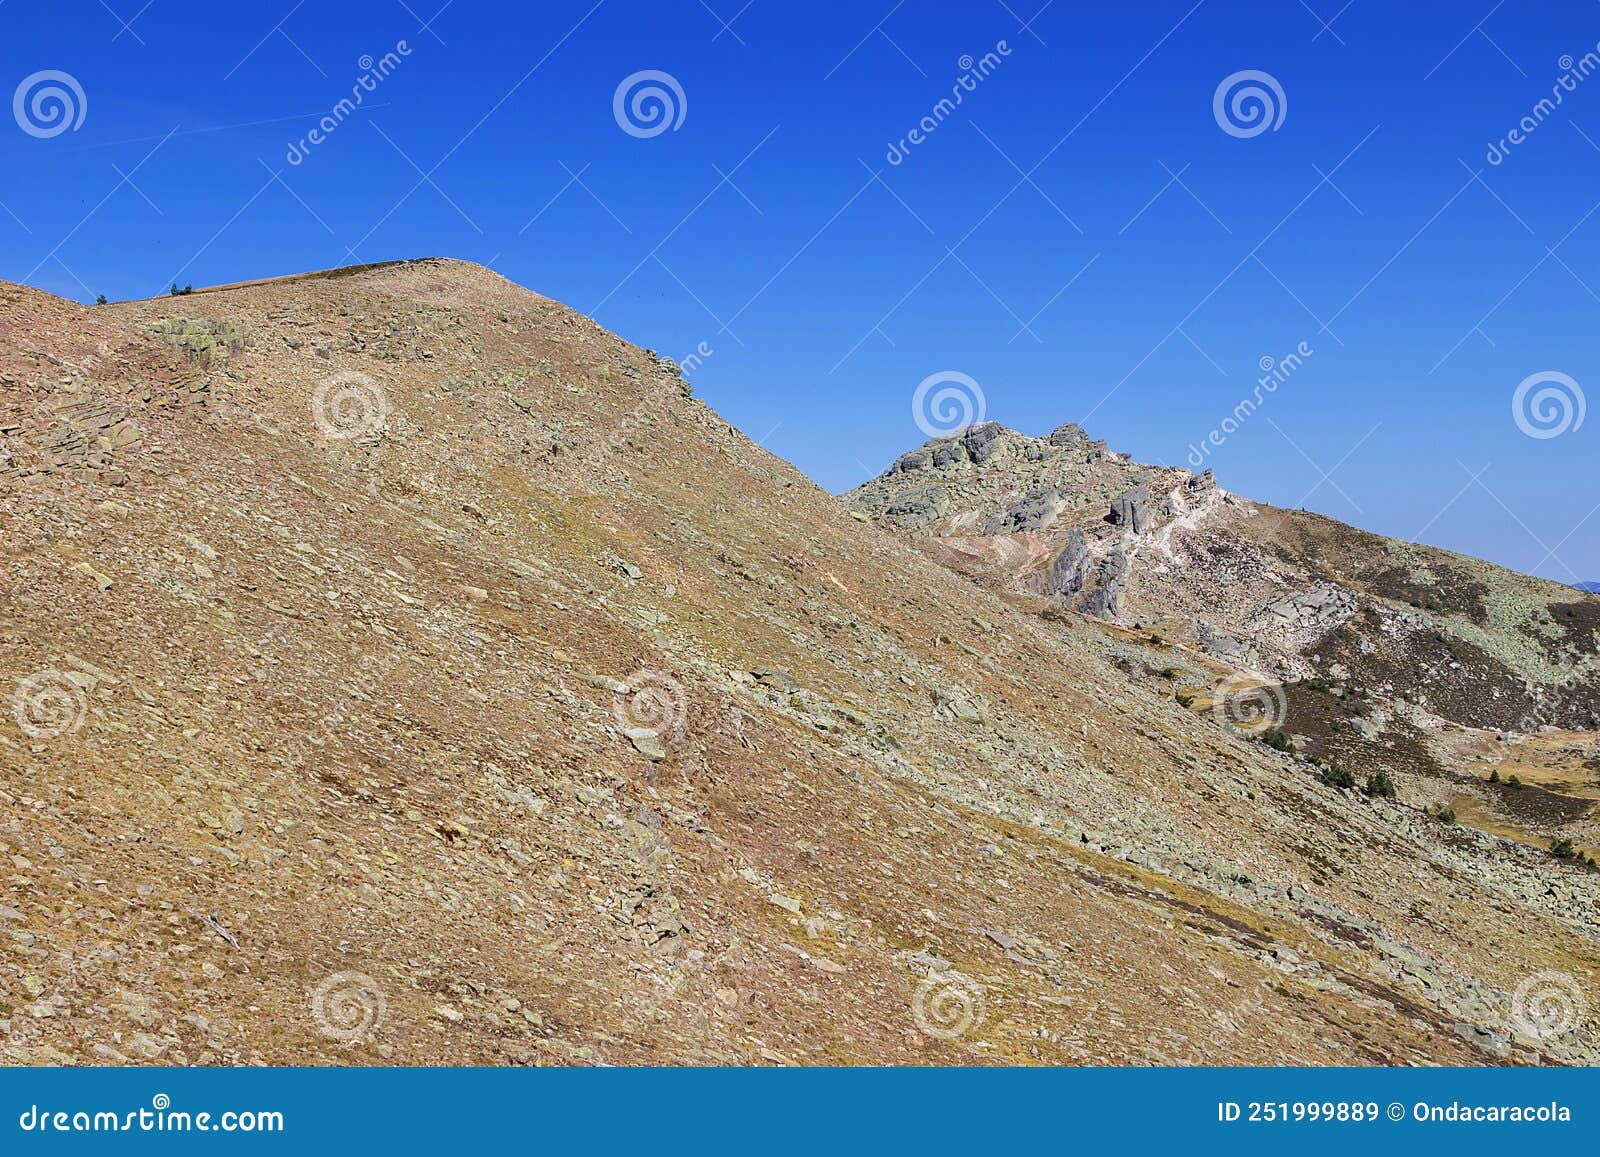 urbion mountain